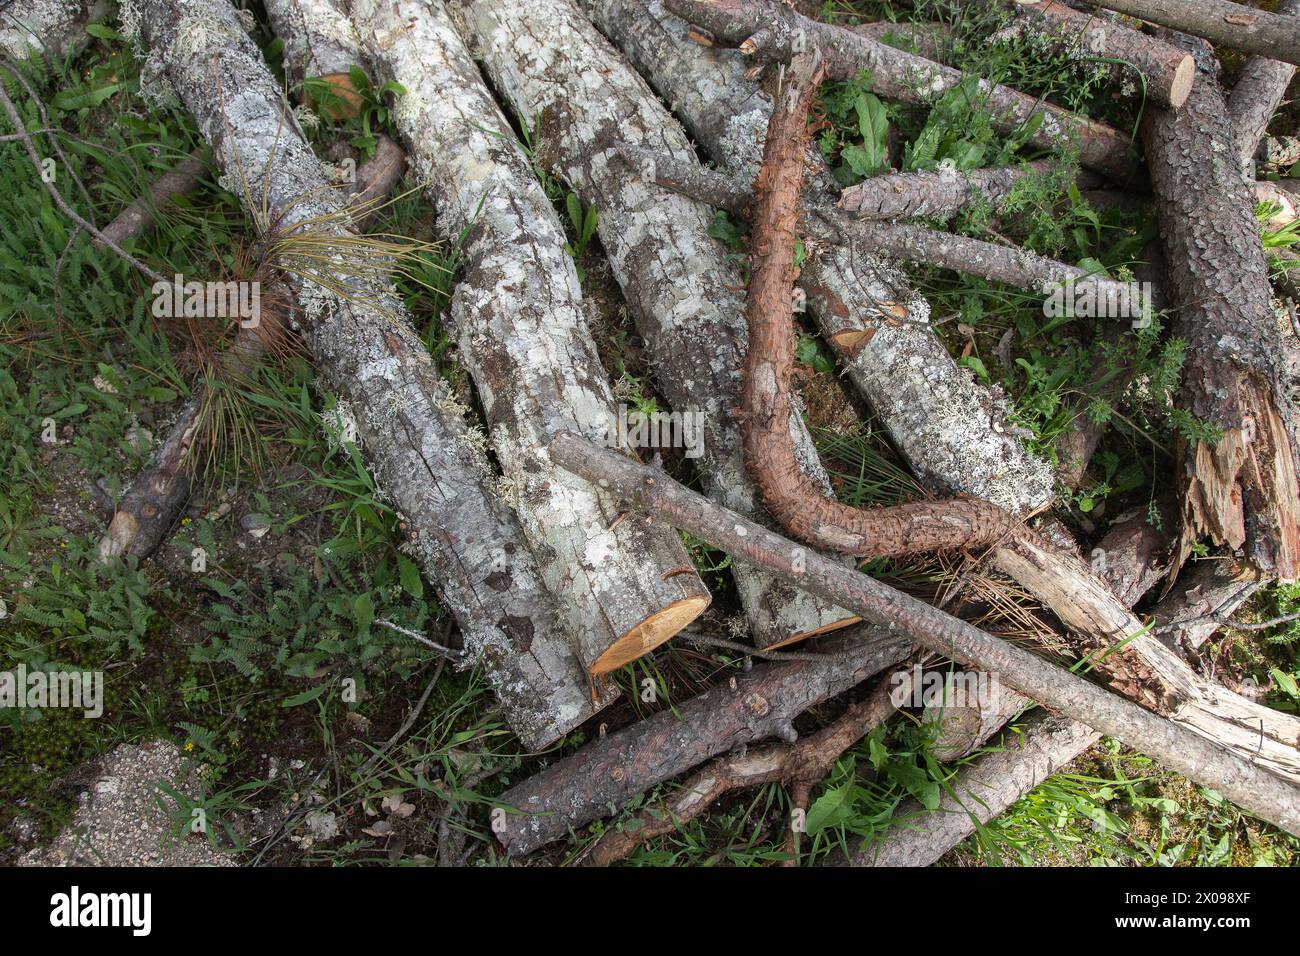 Kiefernstämme, geschnitten und gestapelt, Entwaldung. Reinigung der Wälder, Vorbereitung auf den Winter oder Holz- und Möbelindustrie. Stockfoto